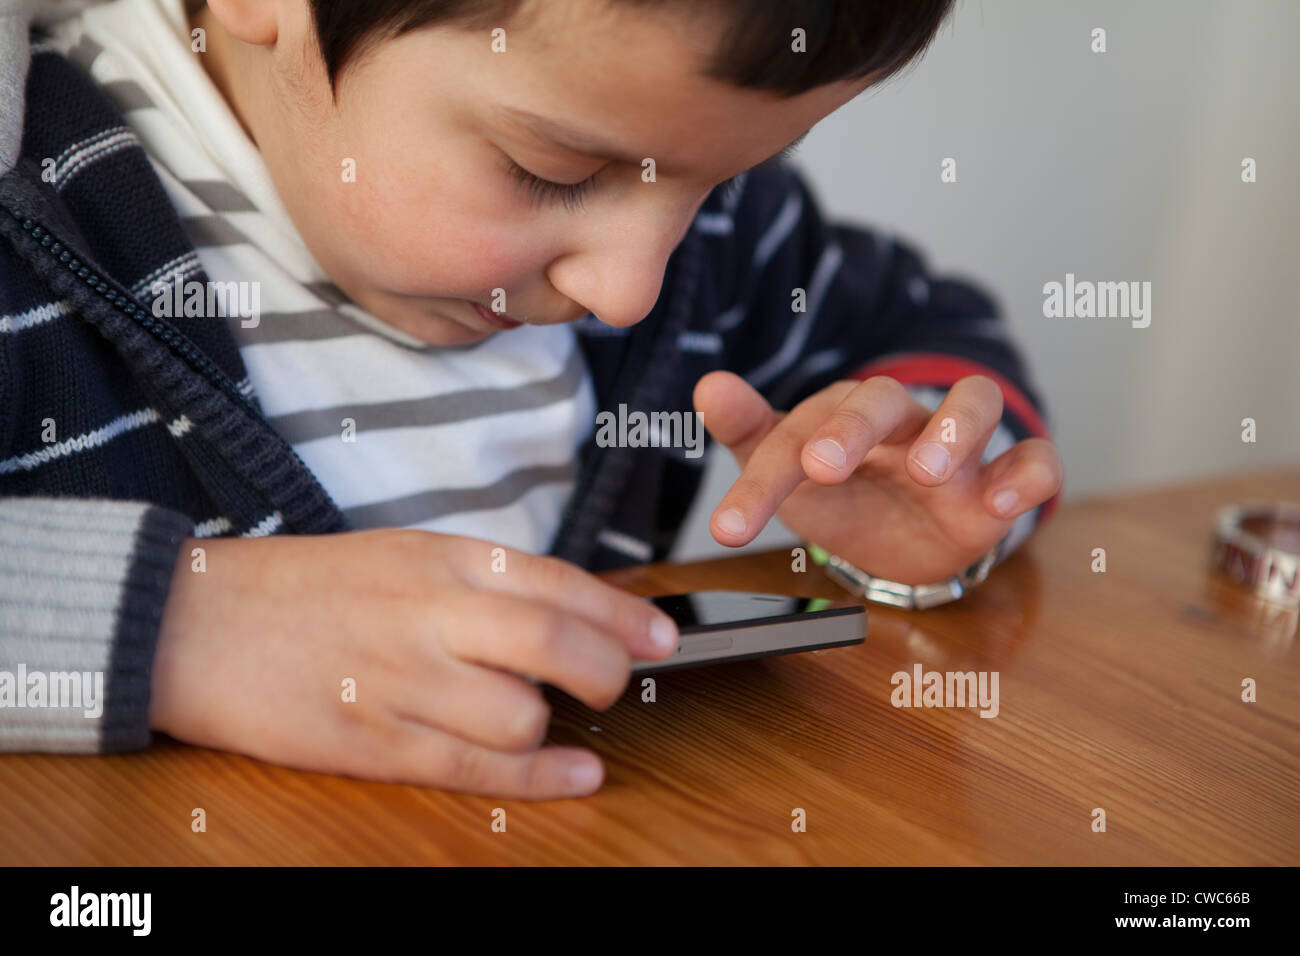 Boy,4 años ,juega con un teléfono inteligente. Foto de stock